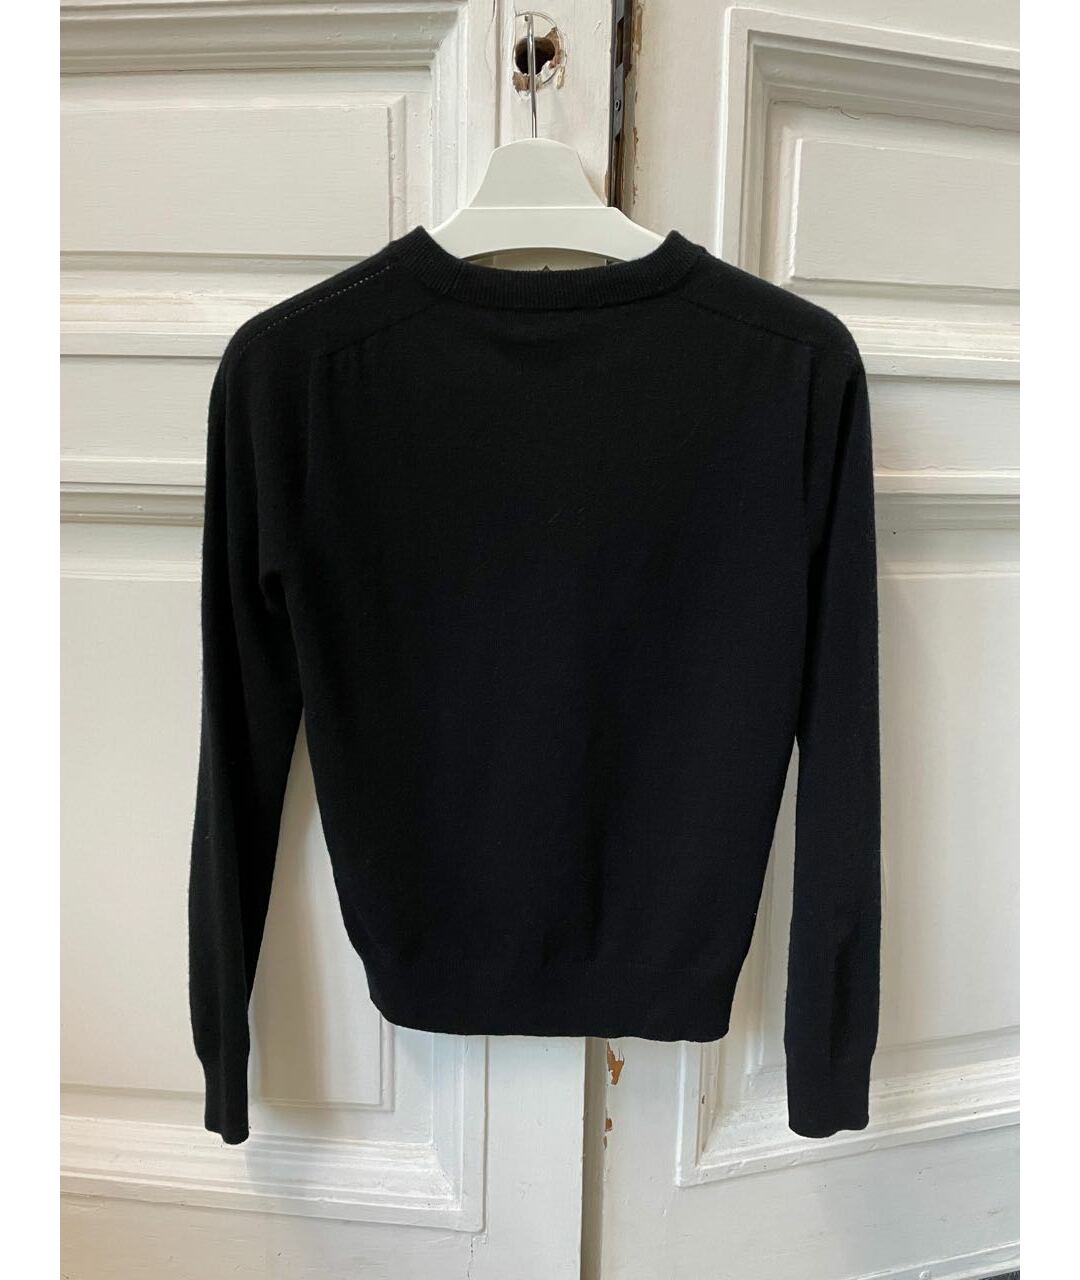 CELINE PRE-OWNED Черный шерстяной джемпер / свитер, фото 3